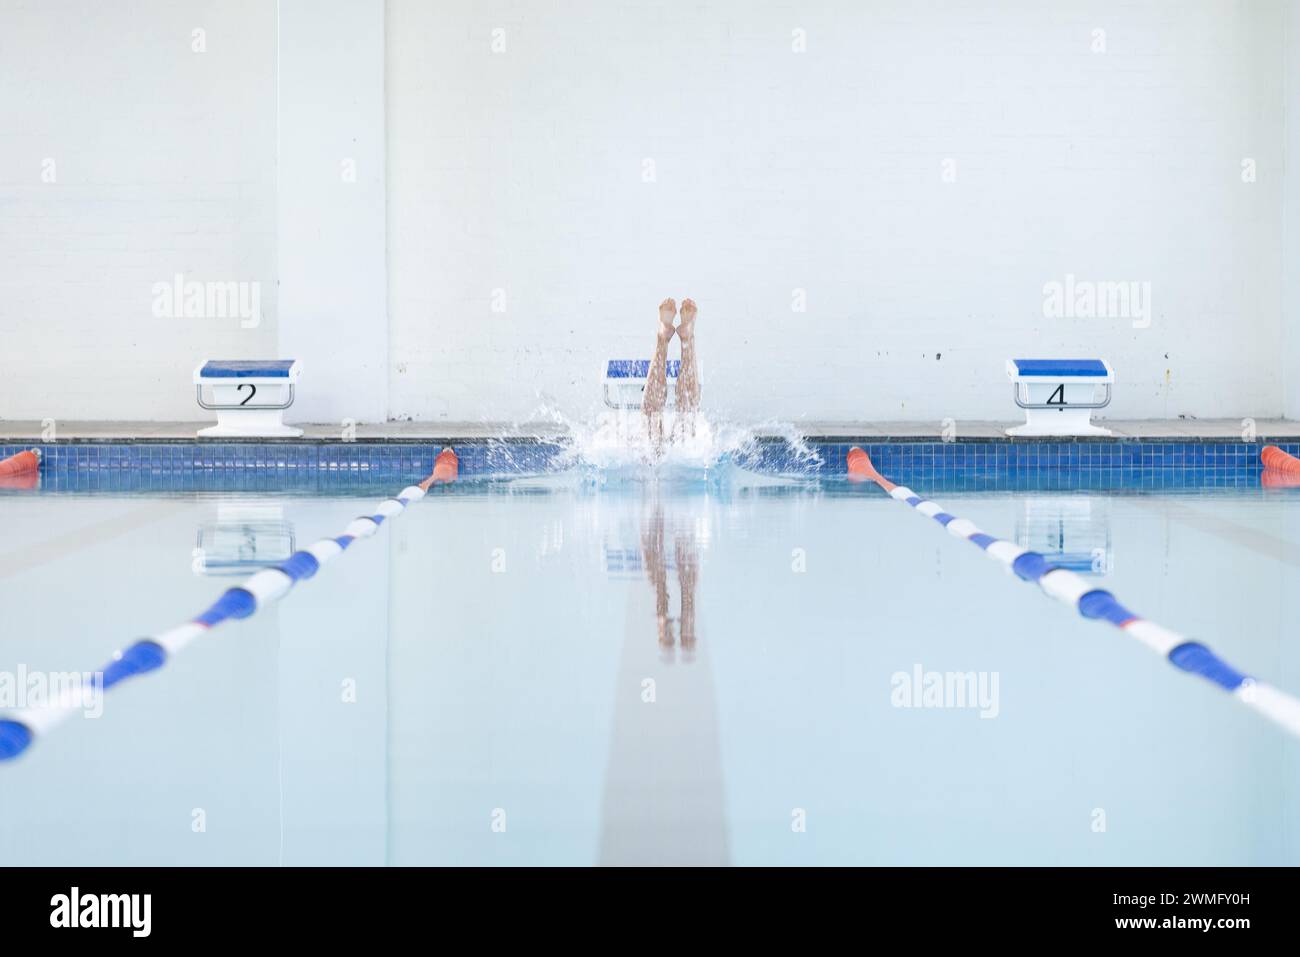 Ein Schwimmer taucht bei einer Schwimmveranstaltung in einen Pool Stockfoto